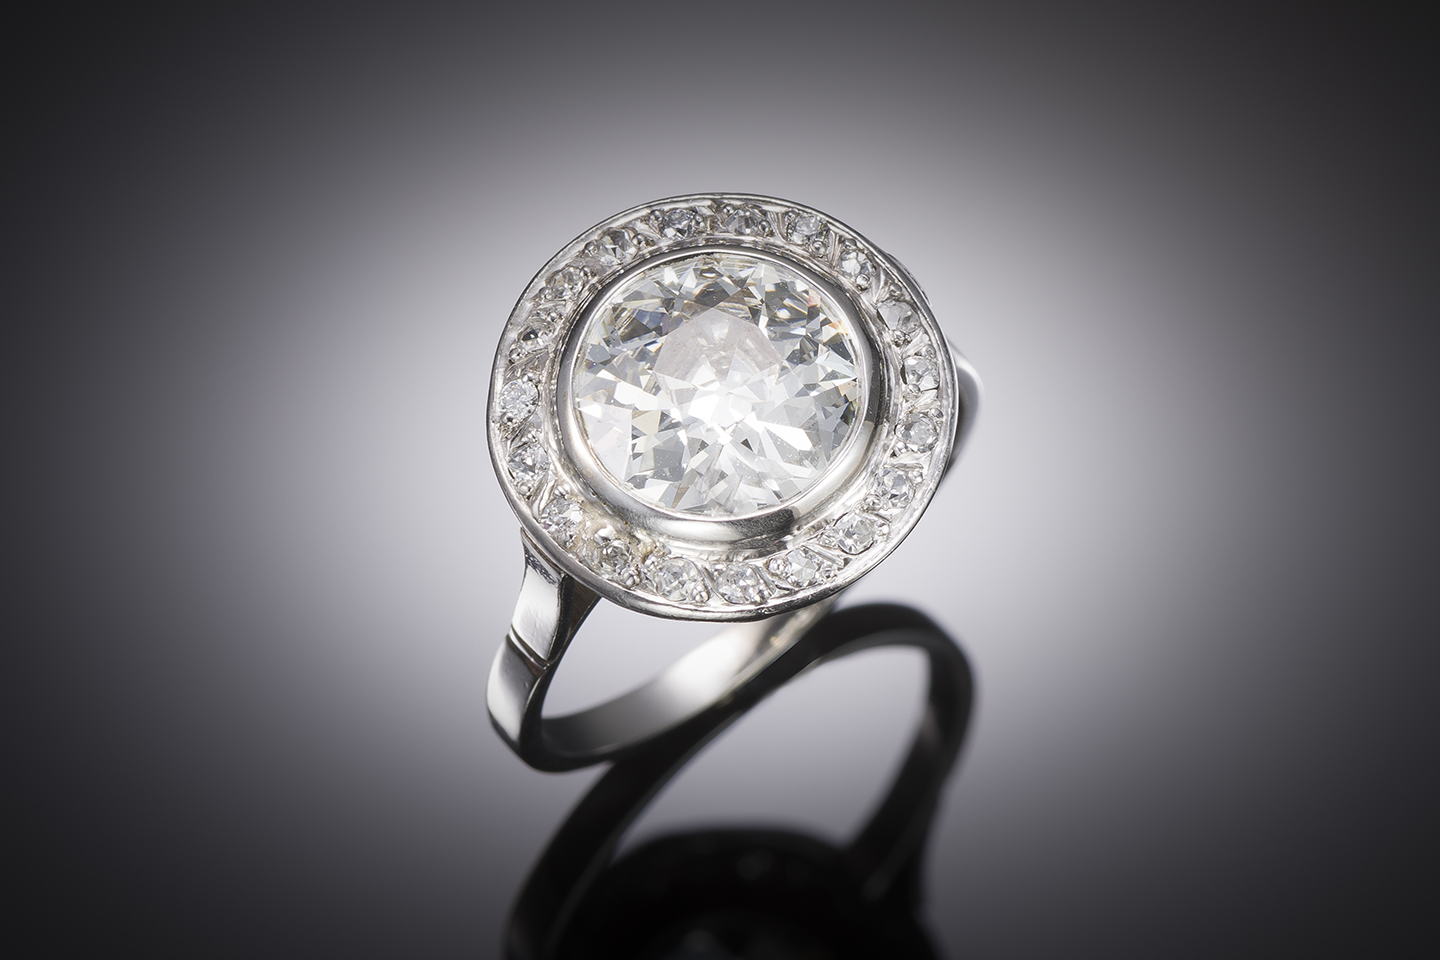 Bague Art déco diamants (3,10 carats, centre 2,79 carats). Travail français vers 1930.-1